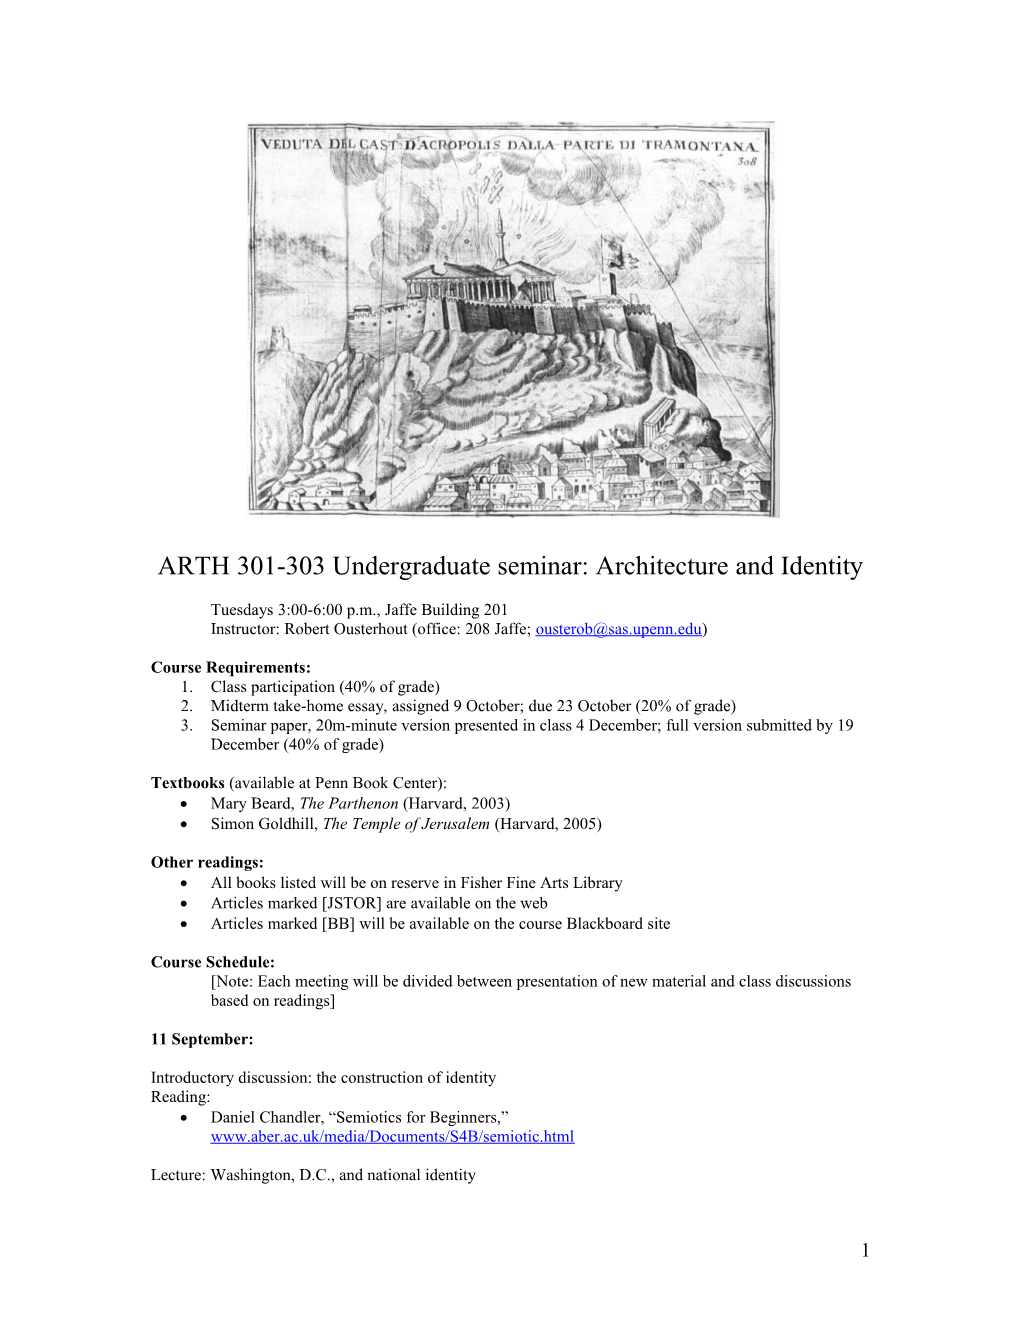 ARTH 301-303 Undergraduate Seminar: Architecture and Identity